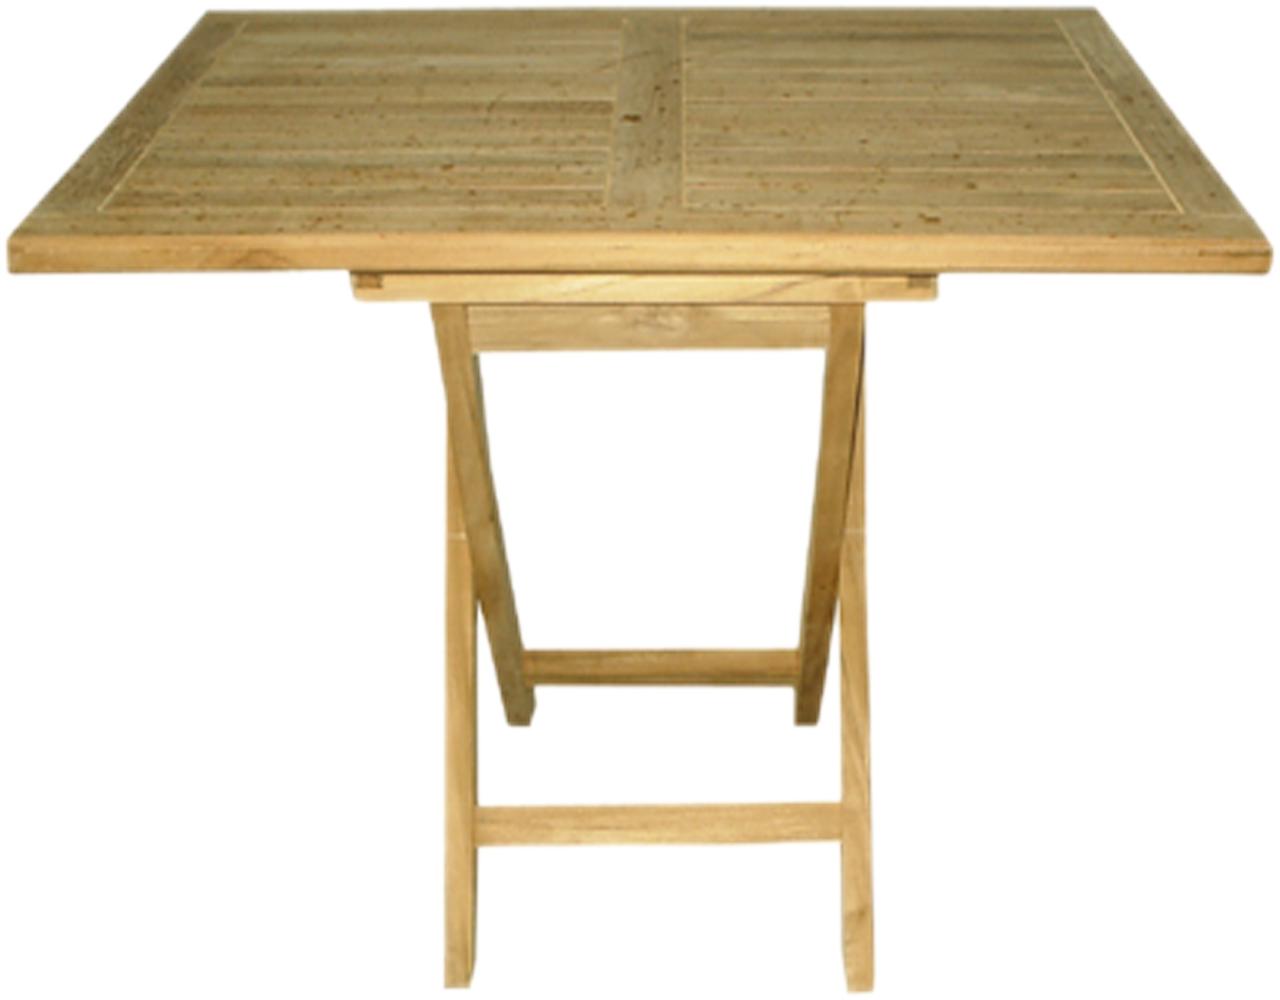 Teak Tisch Gartentisch Klapptisch klappbar 90x70cm Bild 1